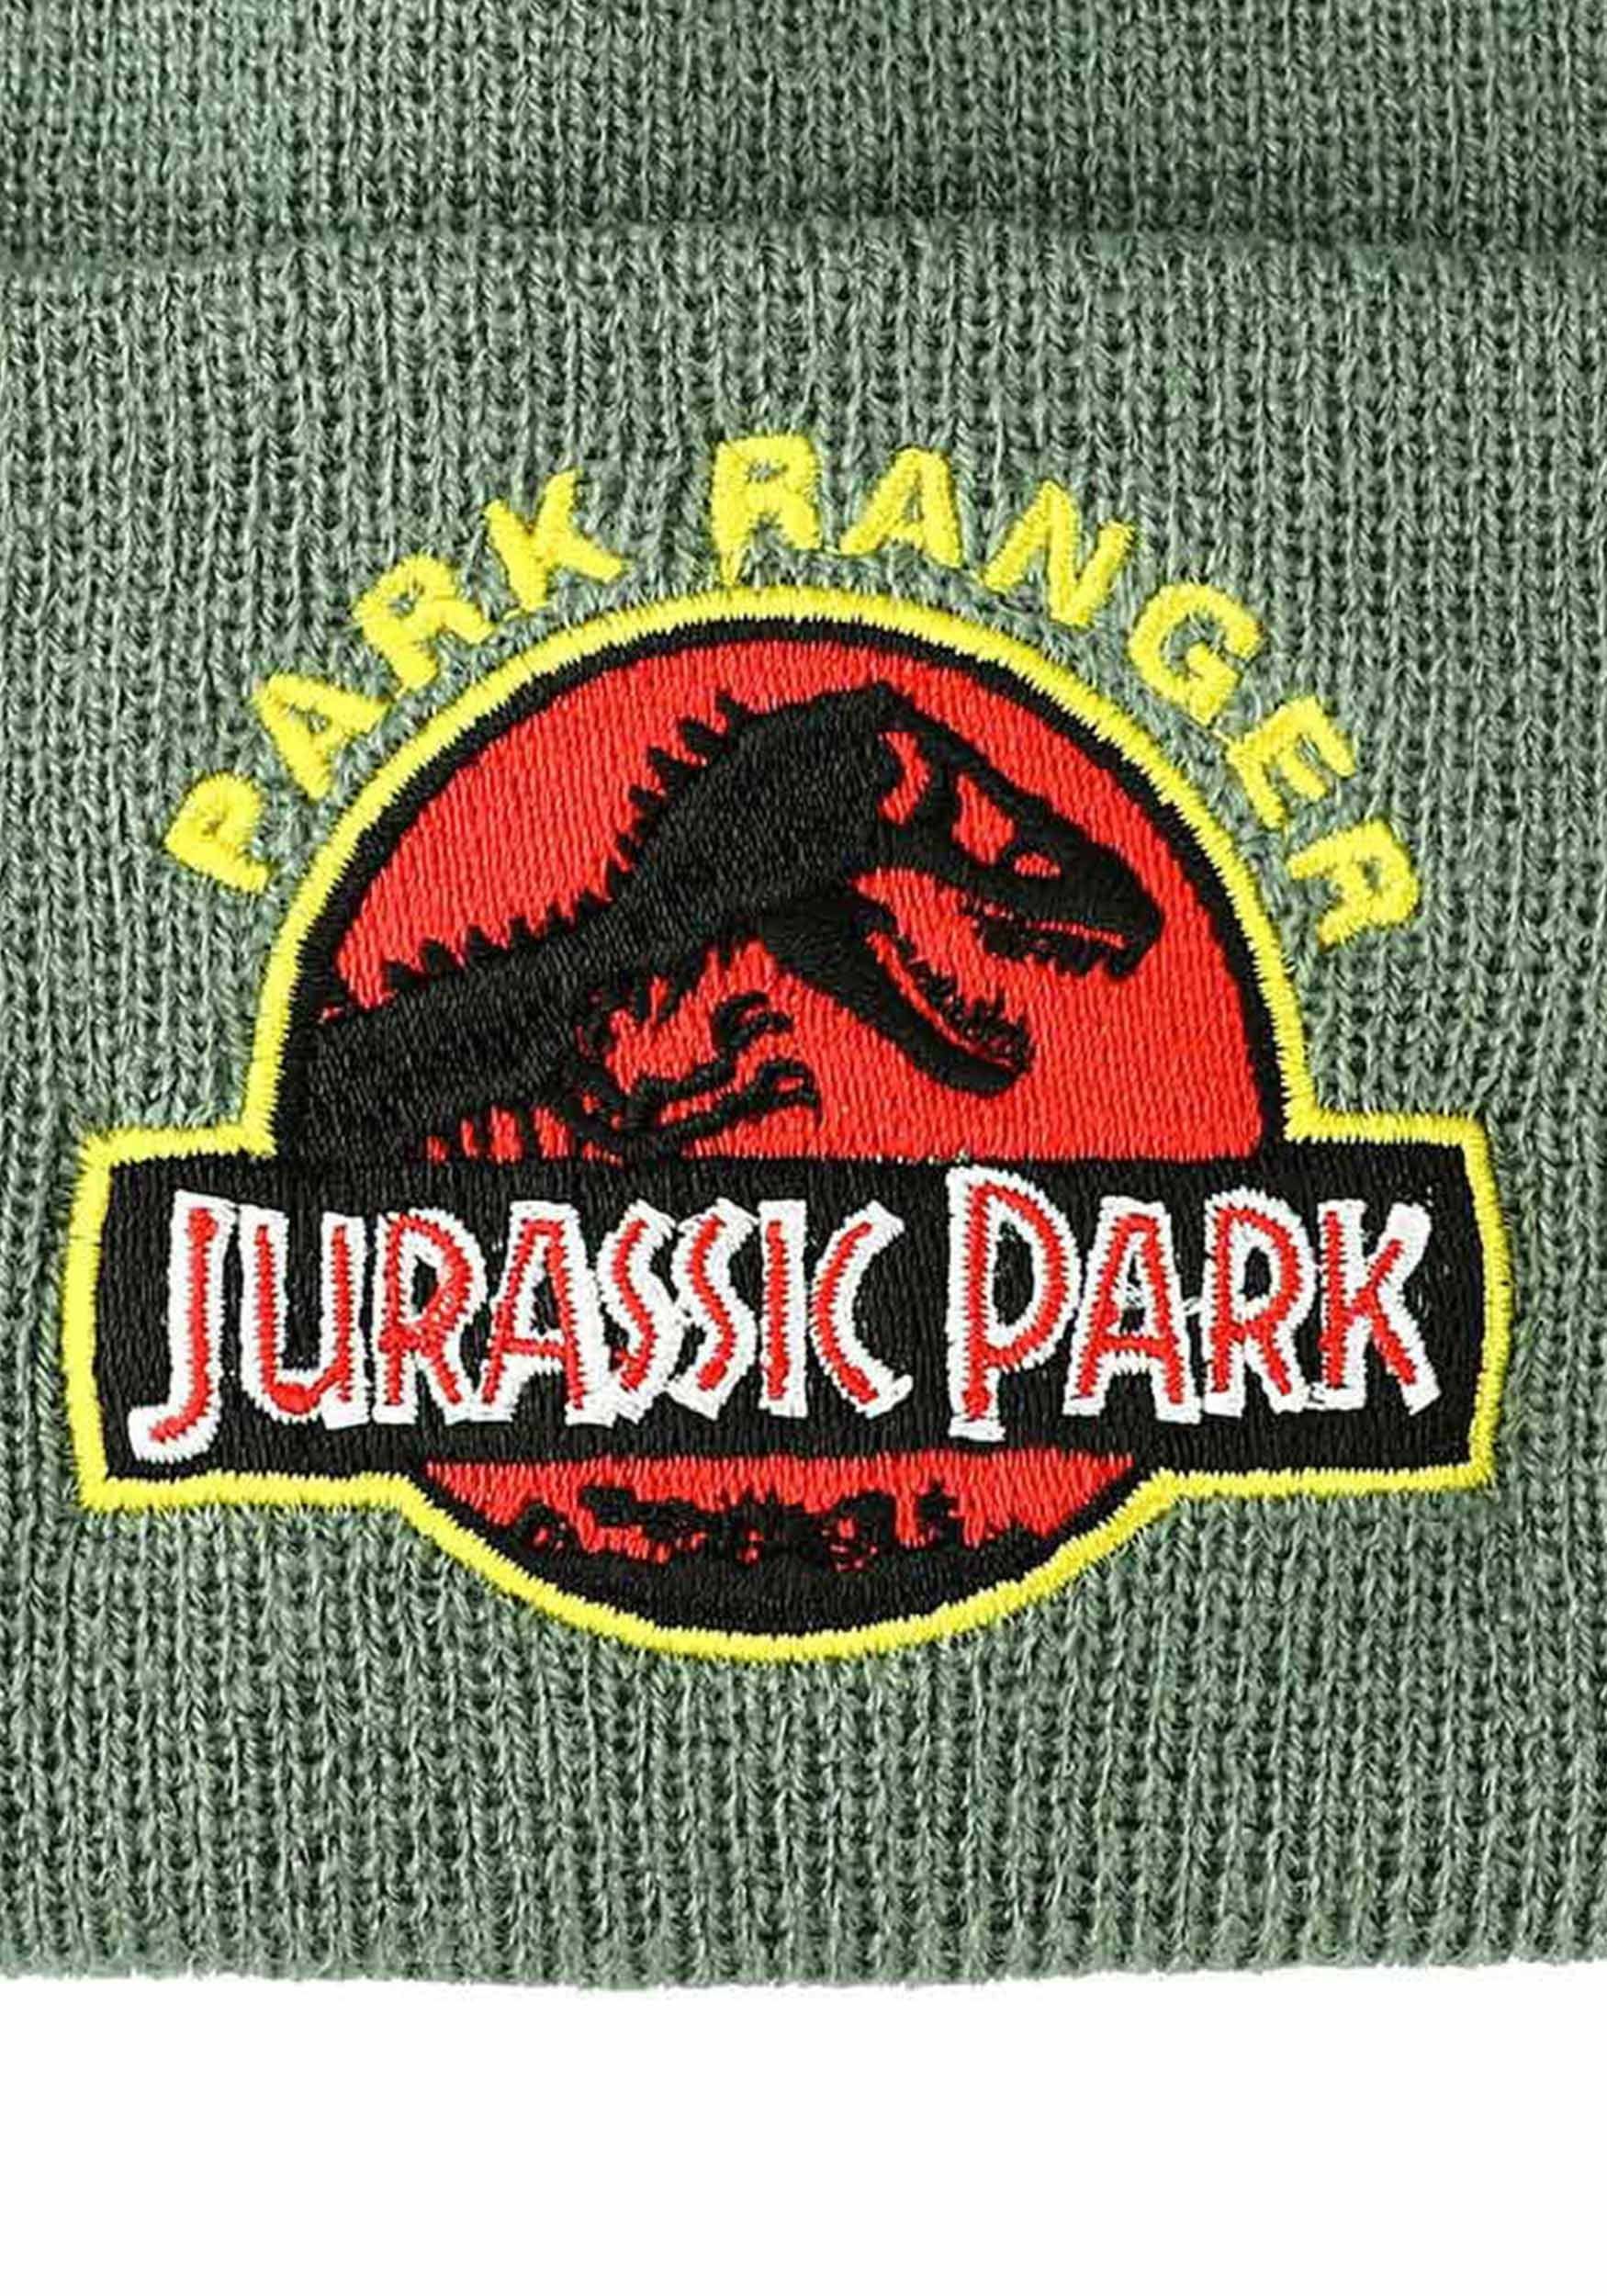 Jurassic Park Ranger Cuff Beanie